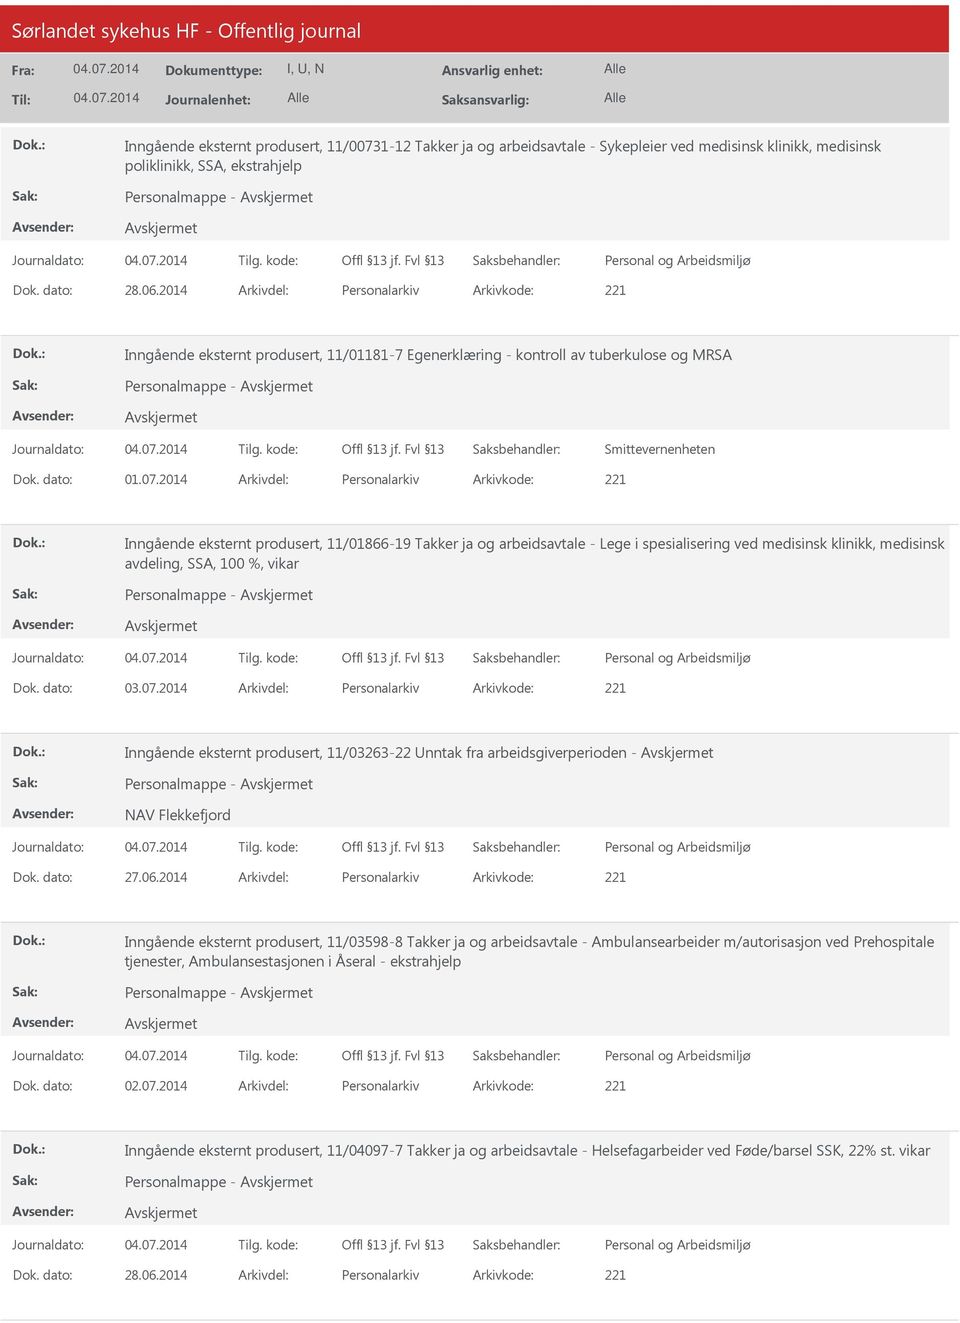 2014 Arkivdel: Personalarkiv Arkivkode: 221 Inngående eksternt produsert, 11/01866-19 Takker ja og arbeidsavtale - Lege i spesialisering ved medisinsk klinikk, medisinsk avdeling, SSA, 100 %, vikar